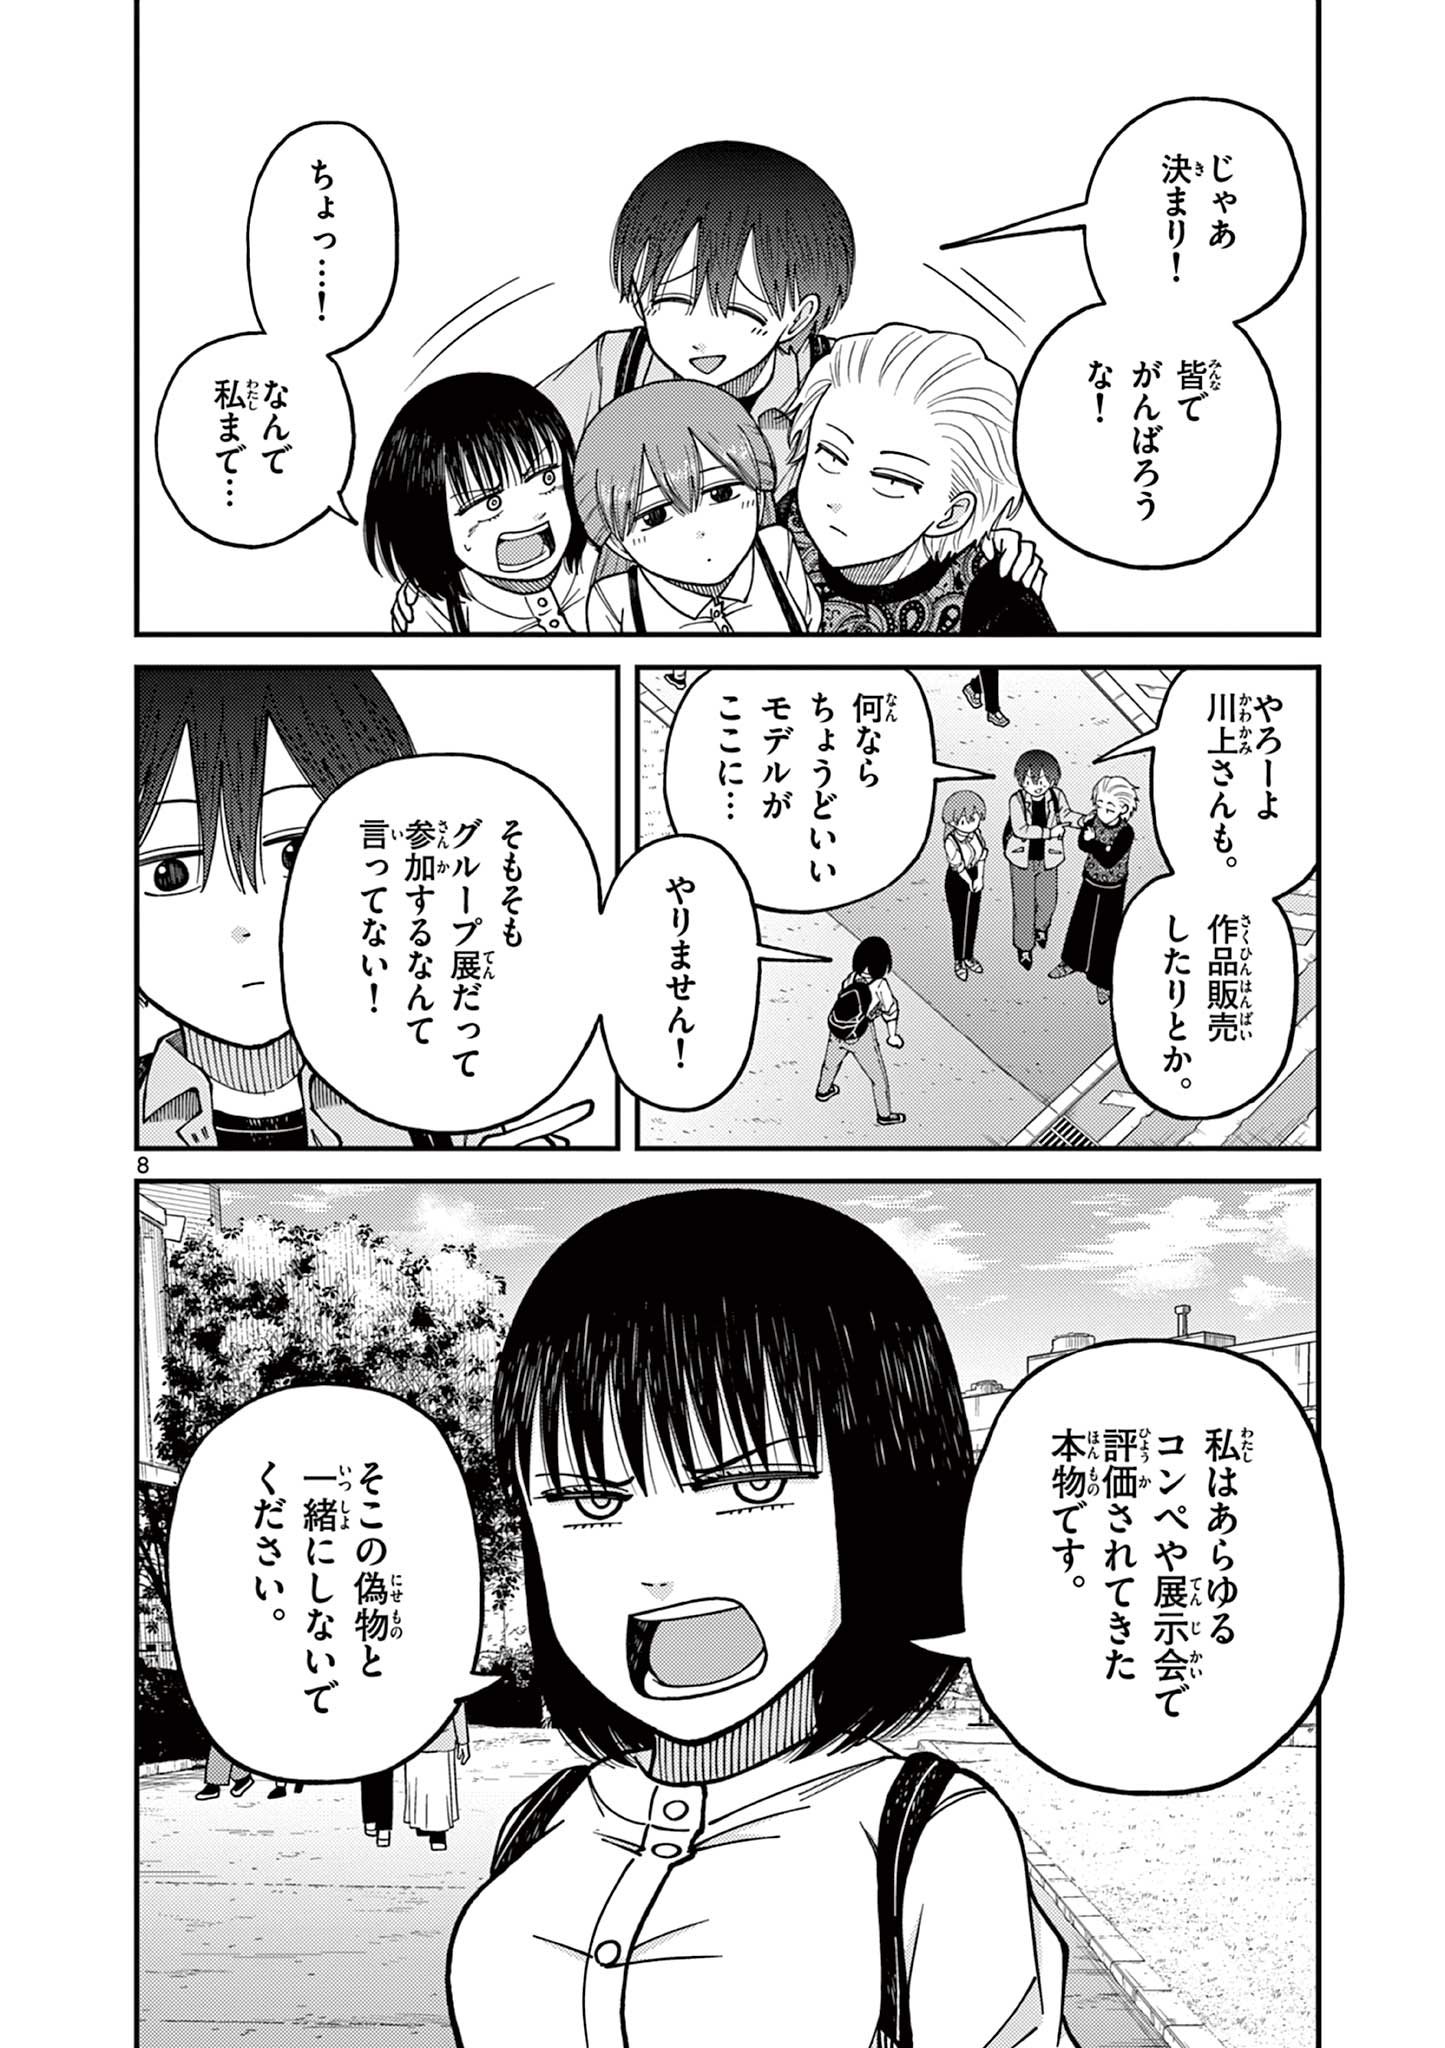 Mimozaizumu - Chapter 14 - Page 8